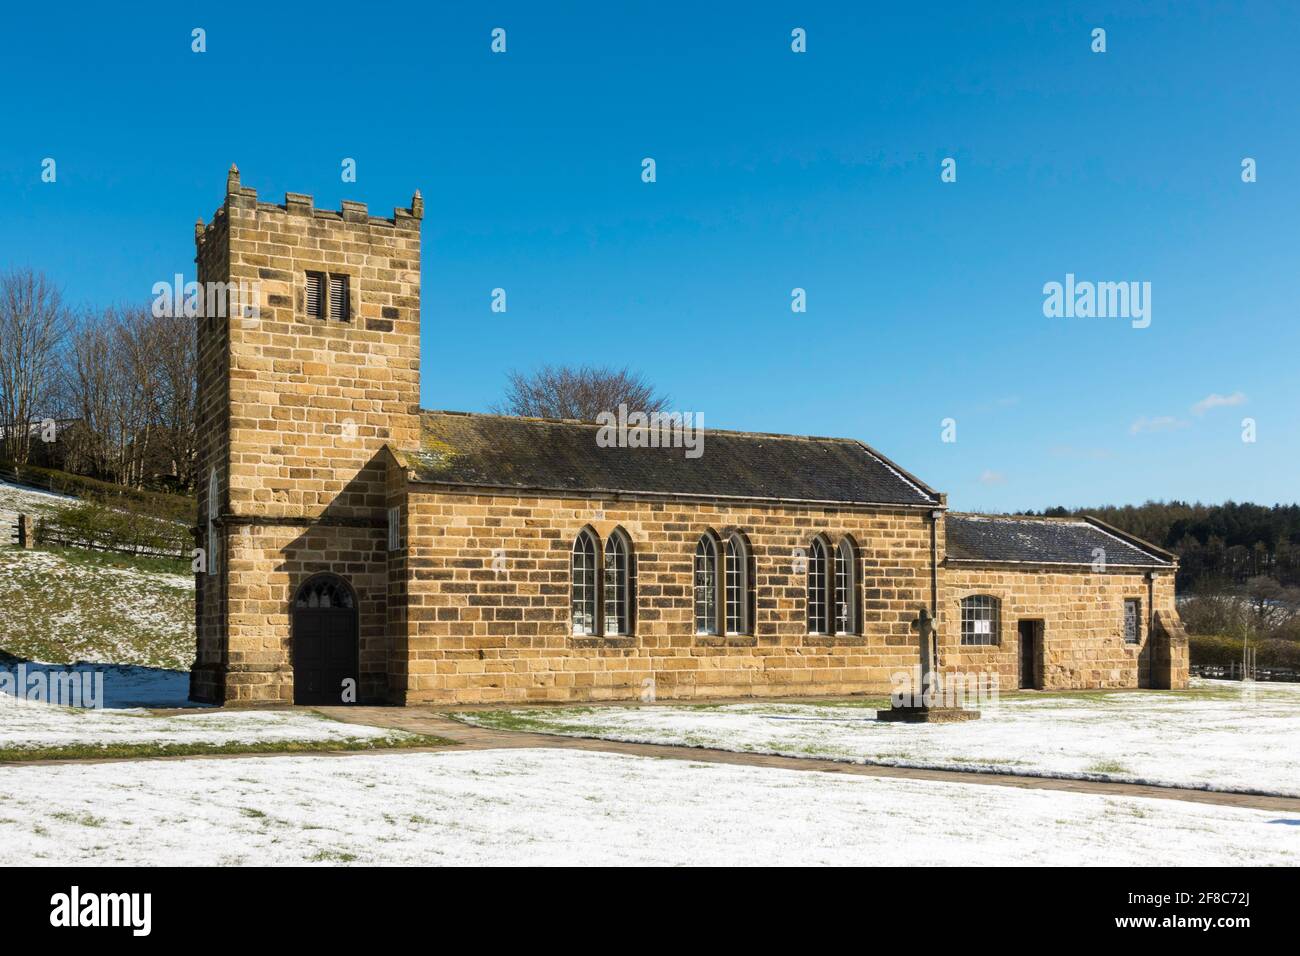 Vue sur l'église d'Eston St Hilda reconstruite au musée Beamish de Co. Durham, Angleterre, Royaume-Uni Banque D'Images